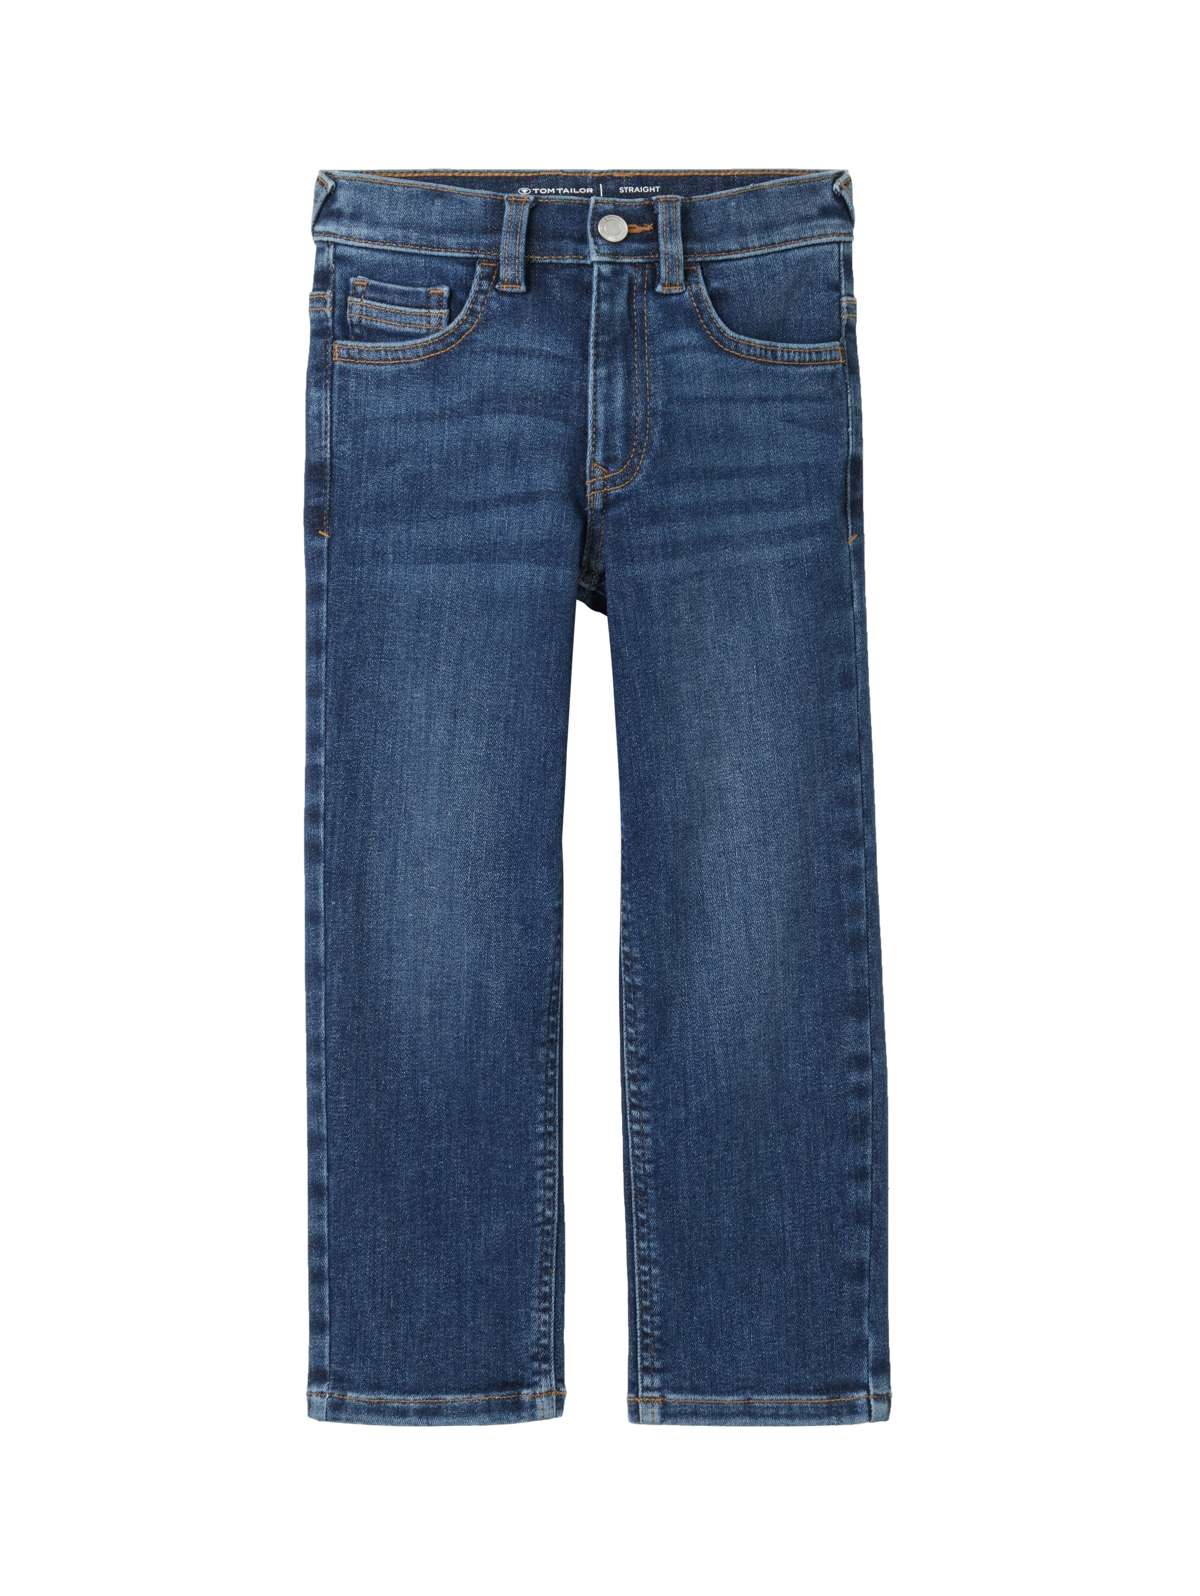 Прямые джинсы с пятью карманами.